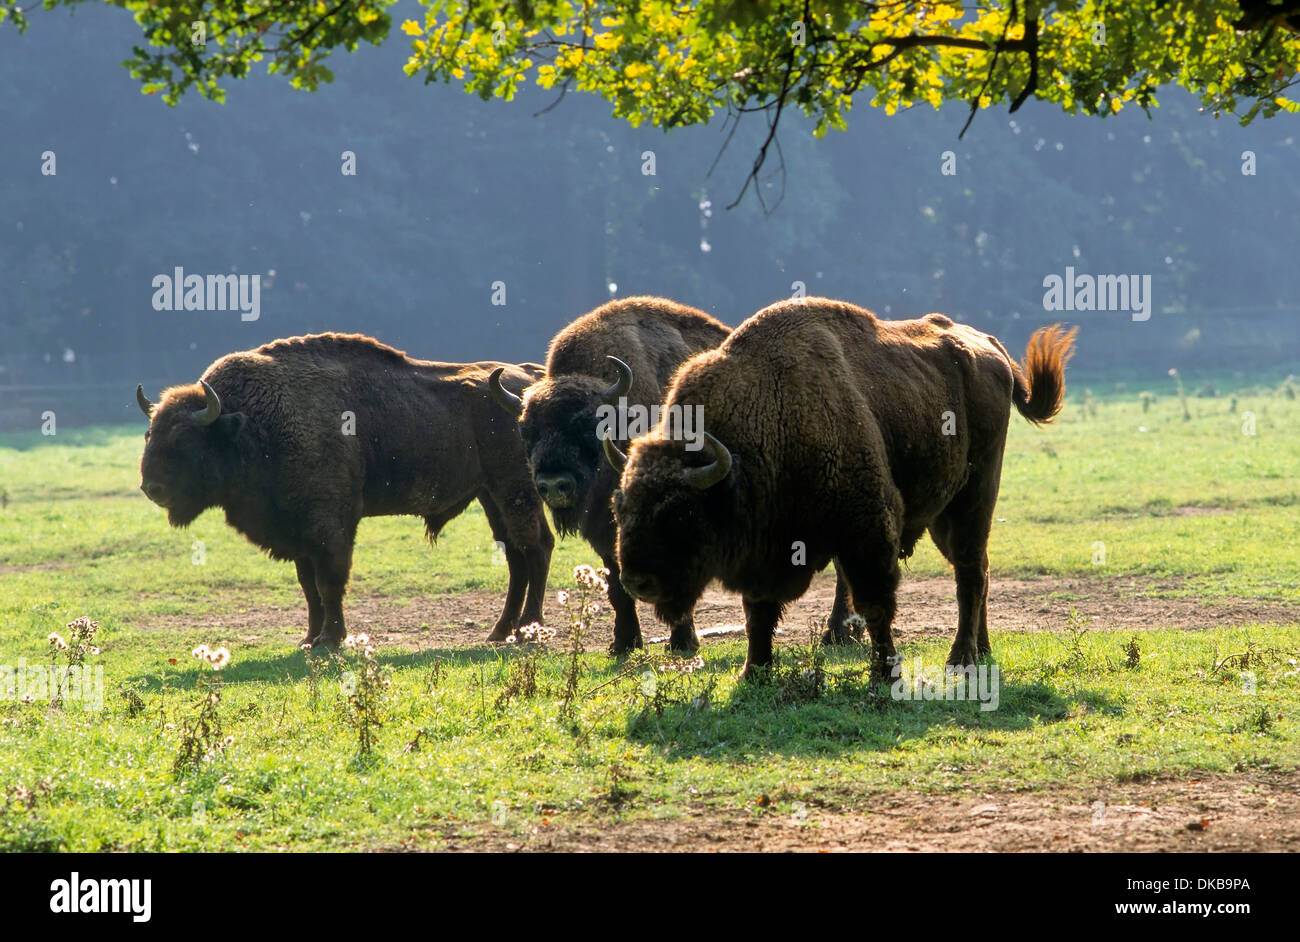 wisent or European bison (Bison bonasus) Saupark Springe Wildlife Park, Wisentkuh, Wisent oder Europaeischer Bison Stock Photo